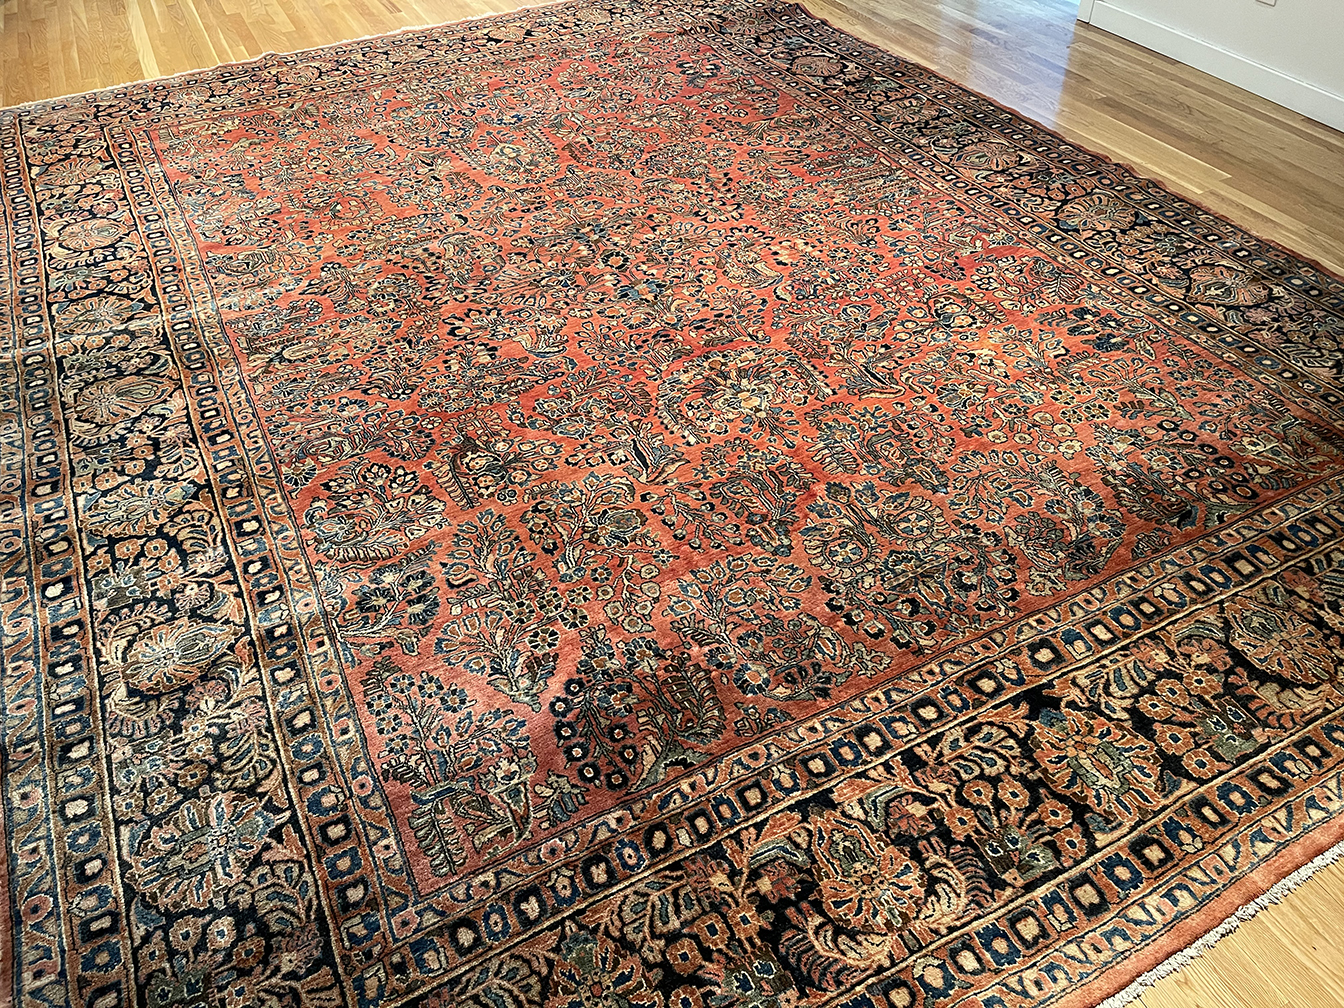 Antique sarouk Carpet - # 55922